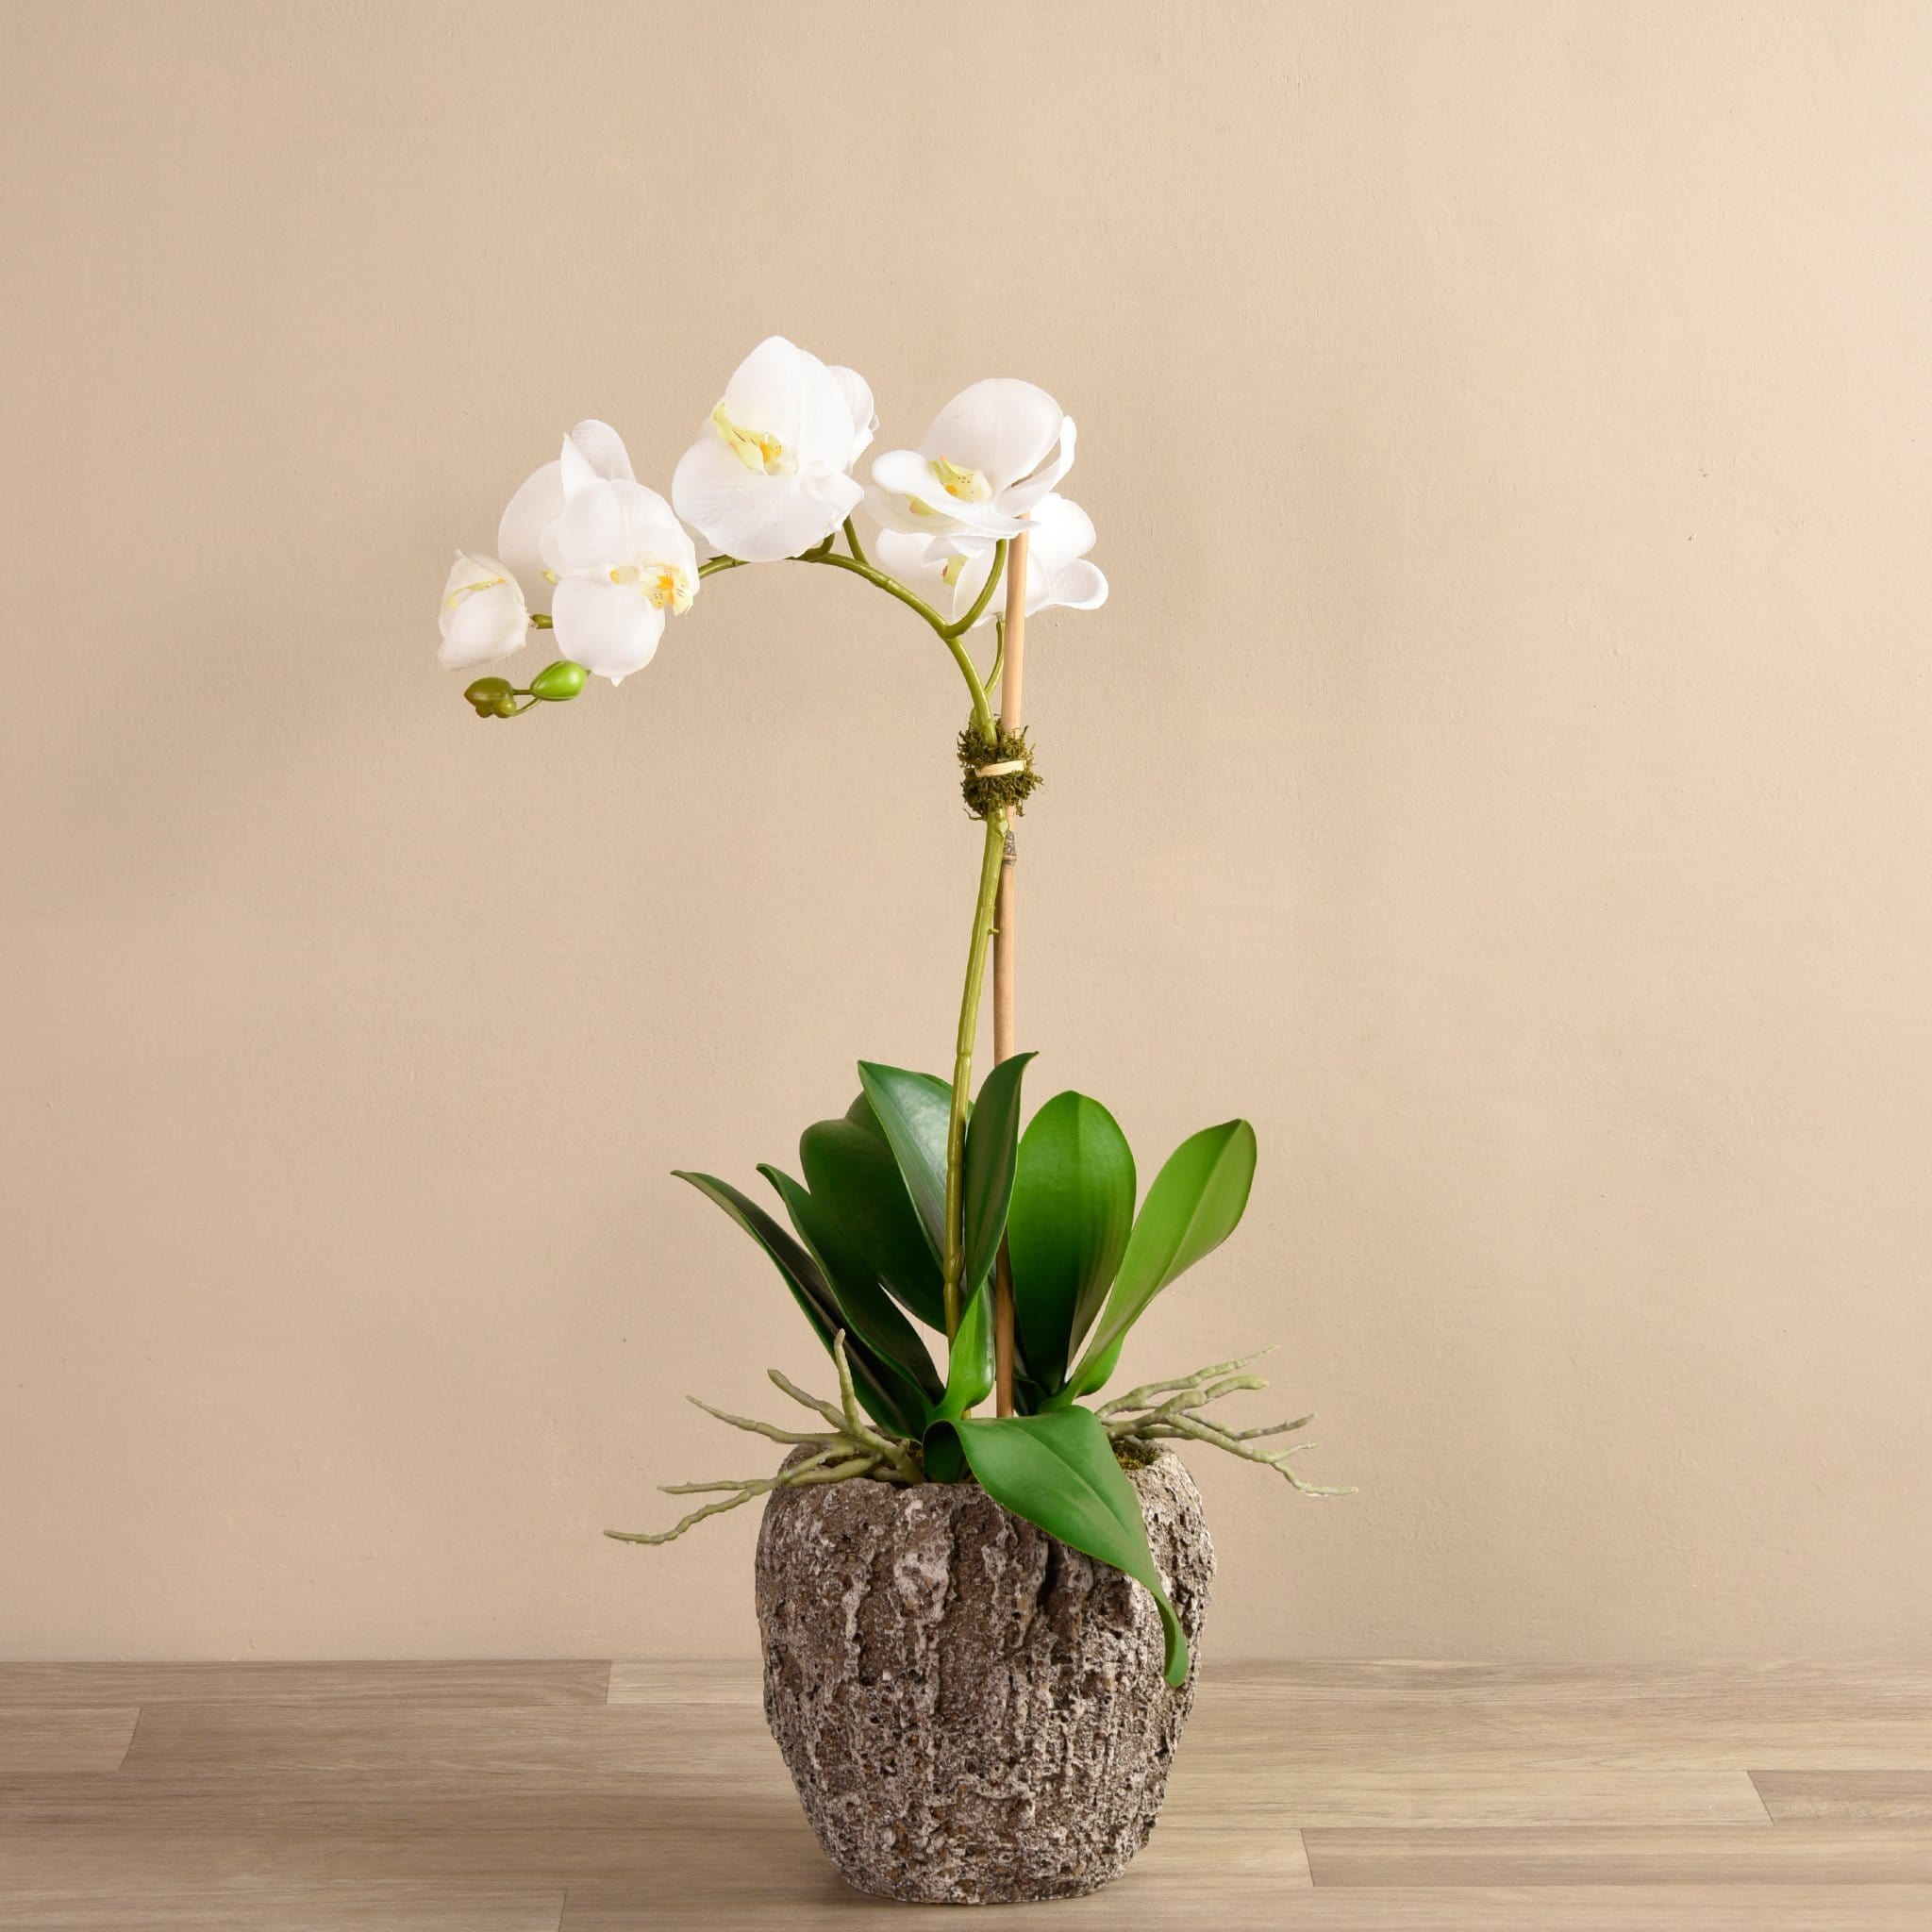 Orchid Arrangement in Concrete Pot - Bloomr